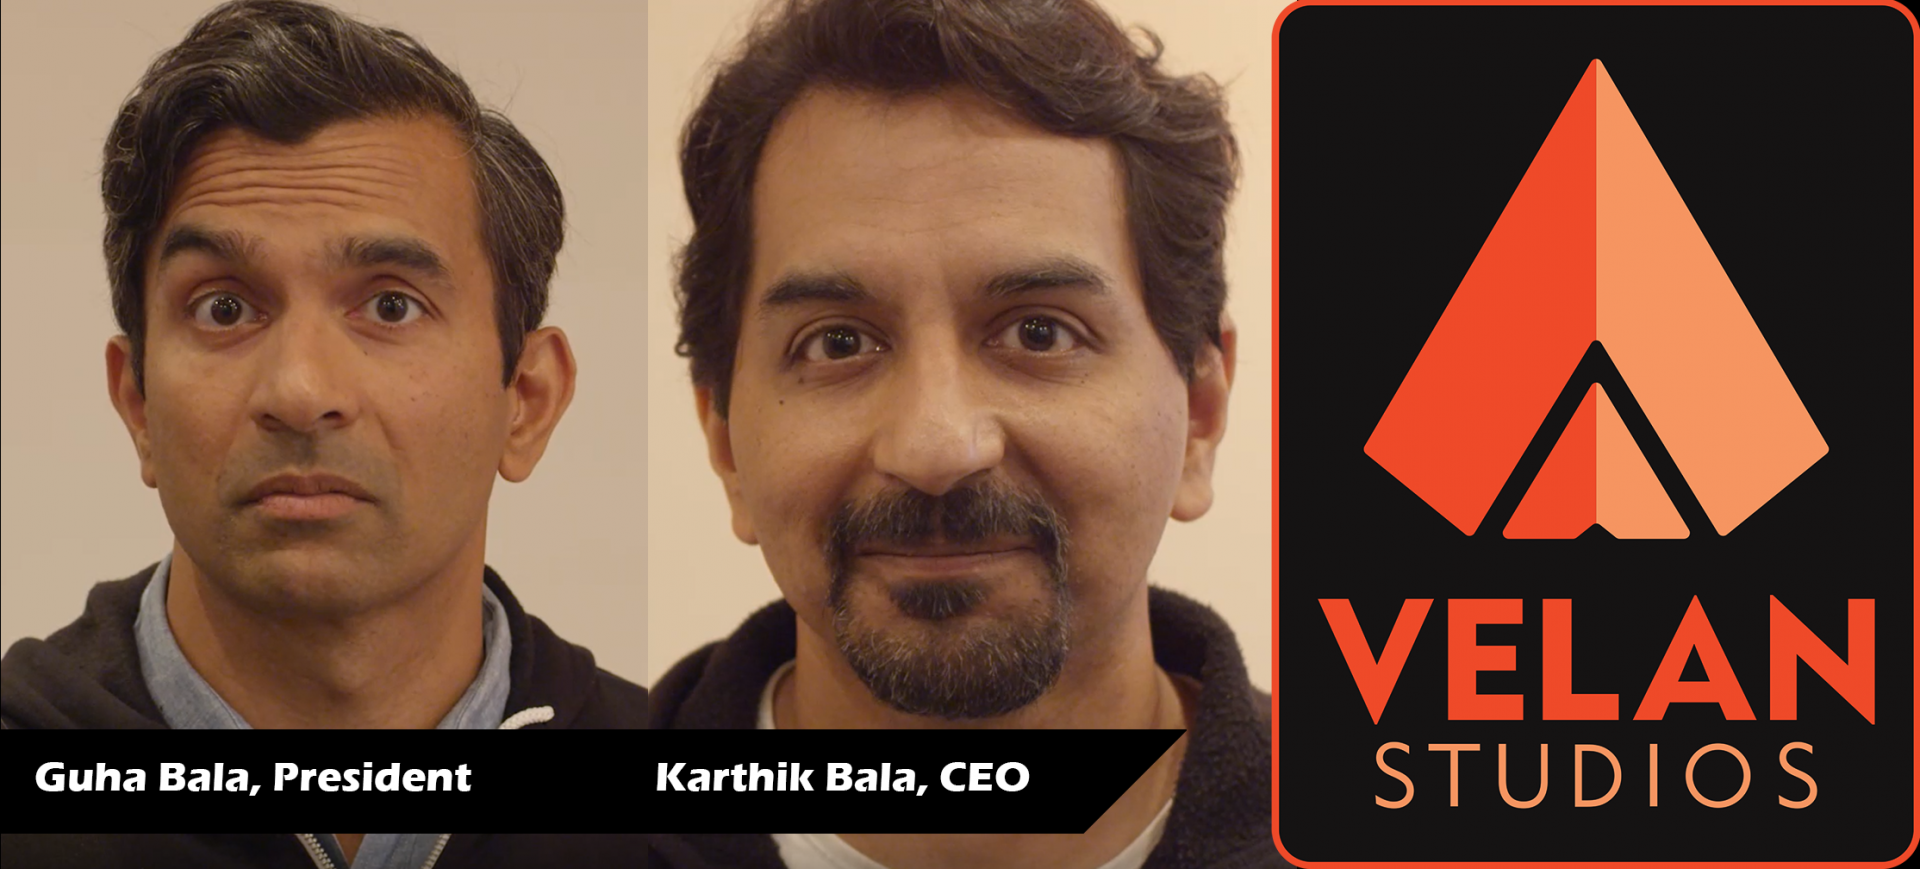 Images of Guha Bala, Karthik Bala and Velan Studios logo